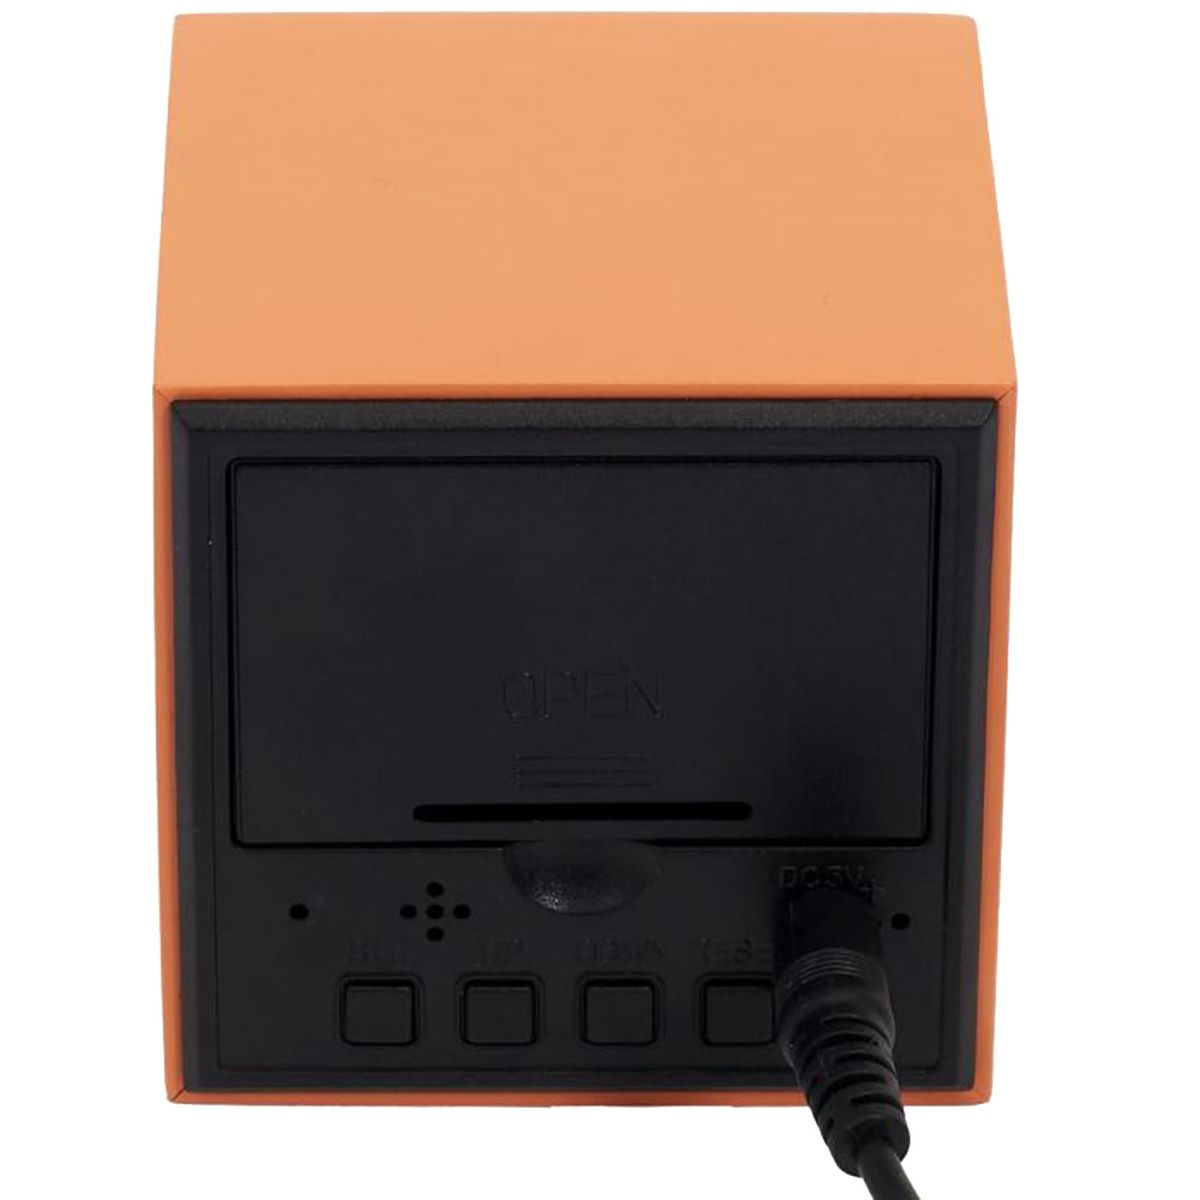 Small Orange cube alarm clock